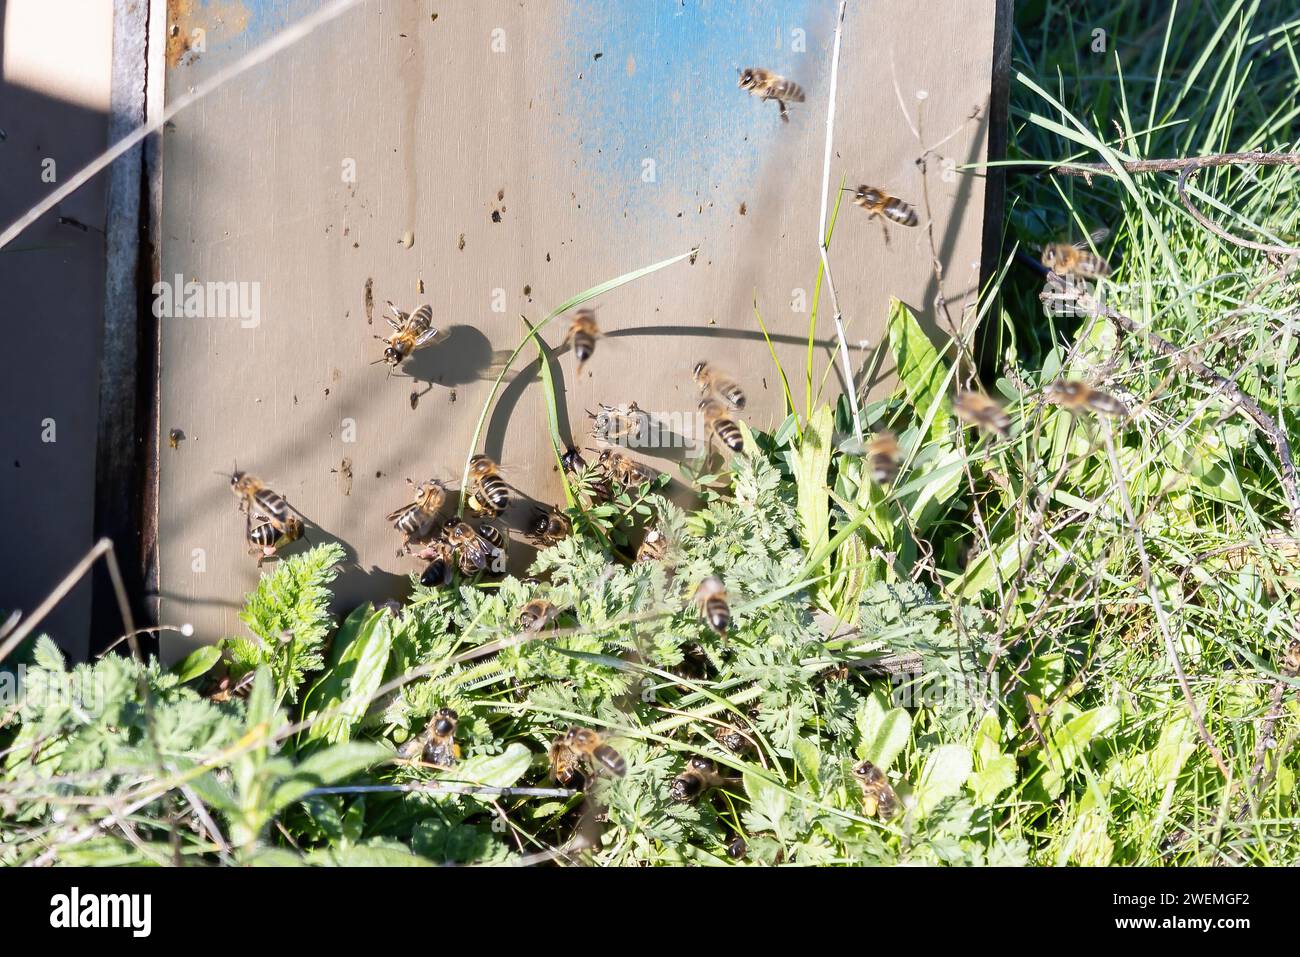 Attività delle api mellifere in un tradizionale alveare di legno nelle montagne huelva per l'impollinazione delle piantagioni e l'ottenimento del miele Foto Stock